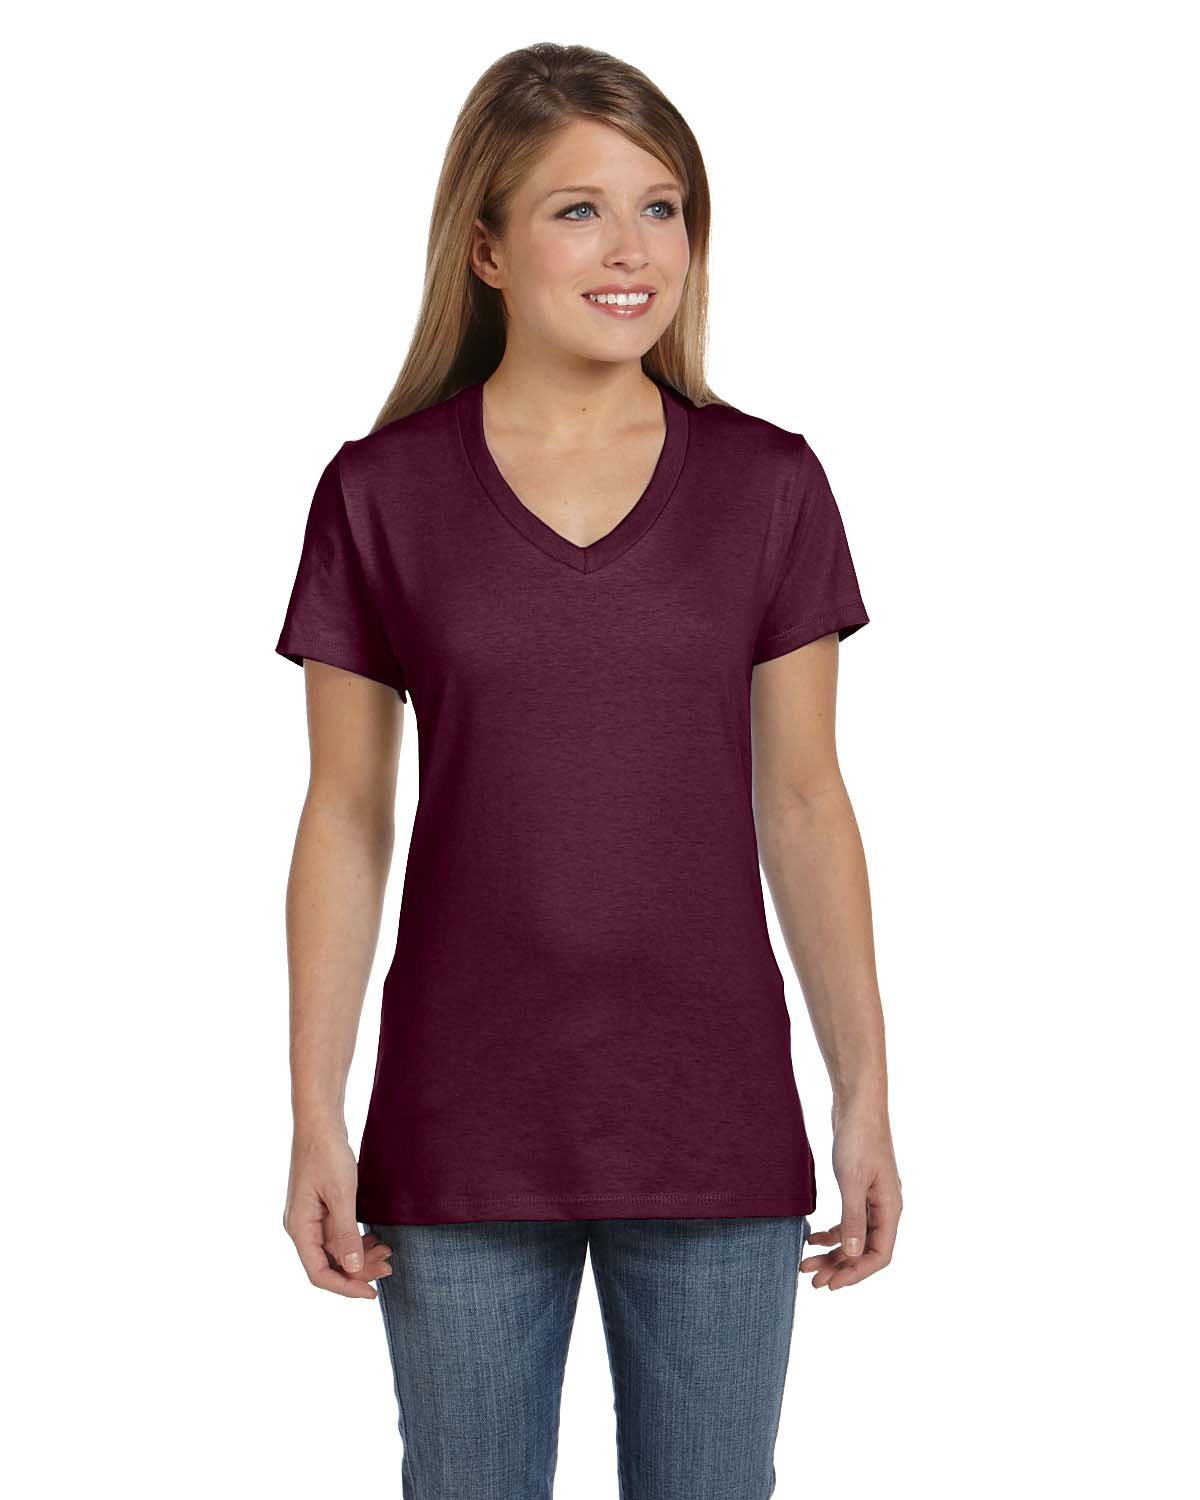 Hanes S04V Ladies' 4.5 oz., 100% Ringspun Cotton nano-T® V-Neck T-Shirt